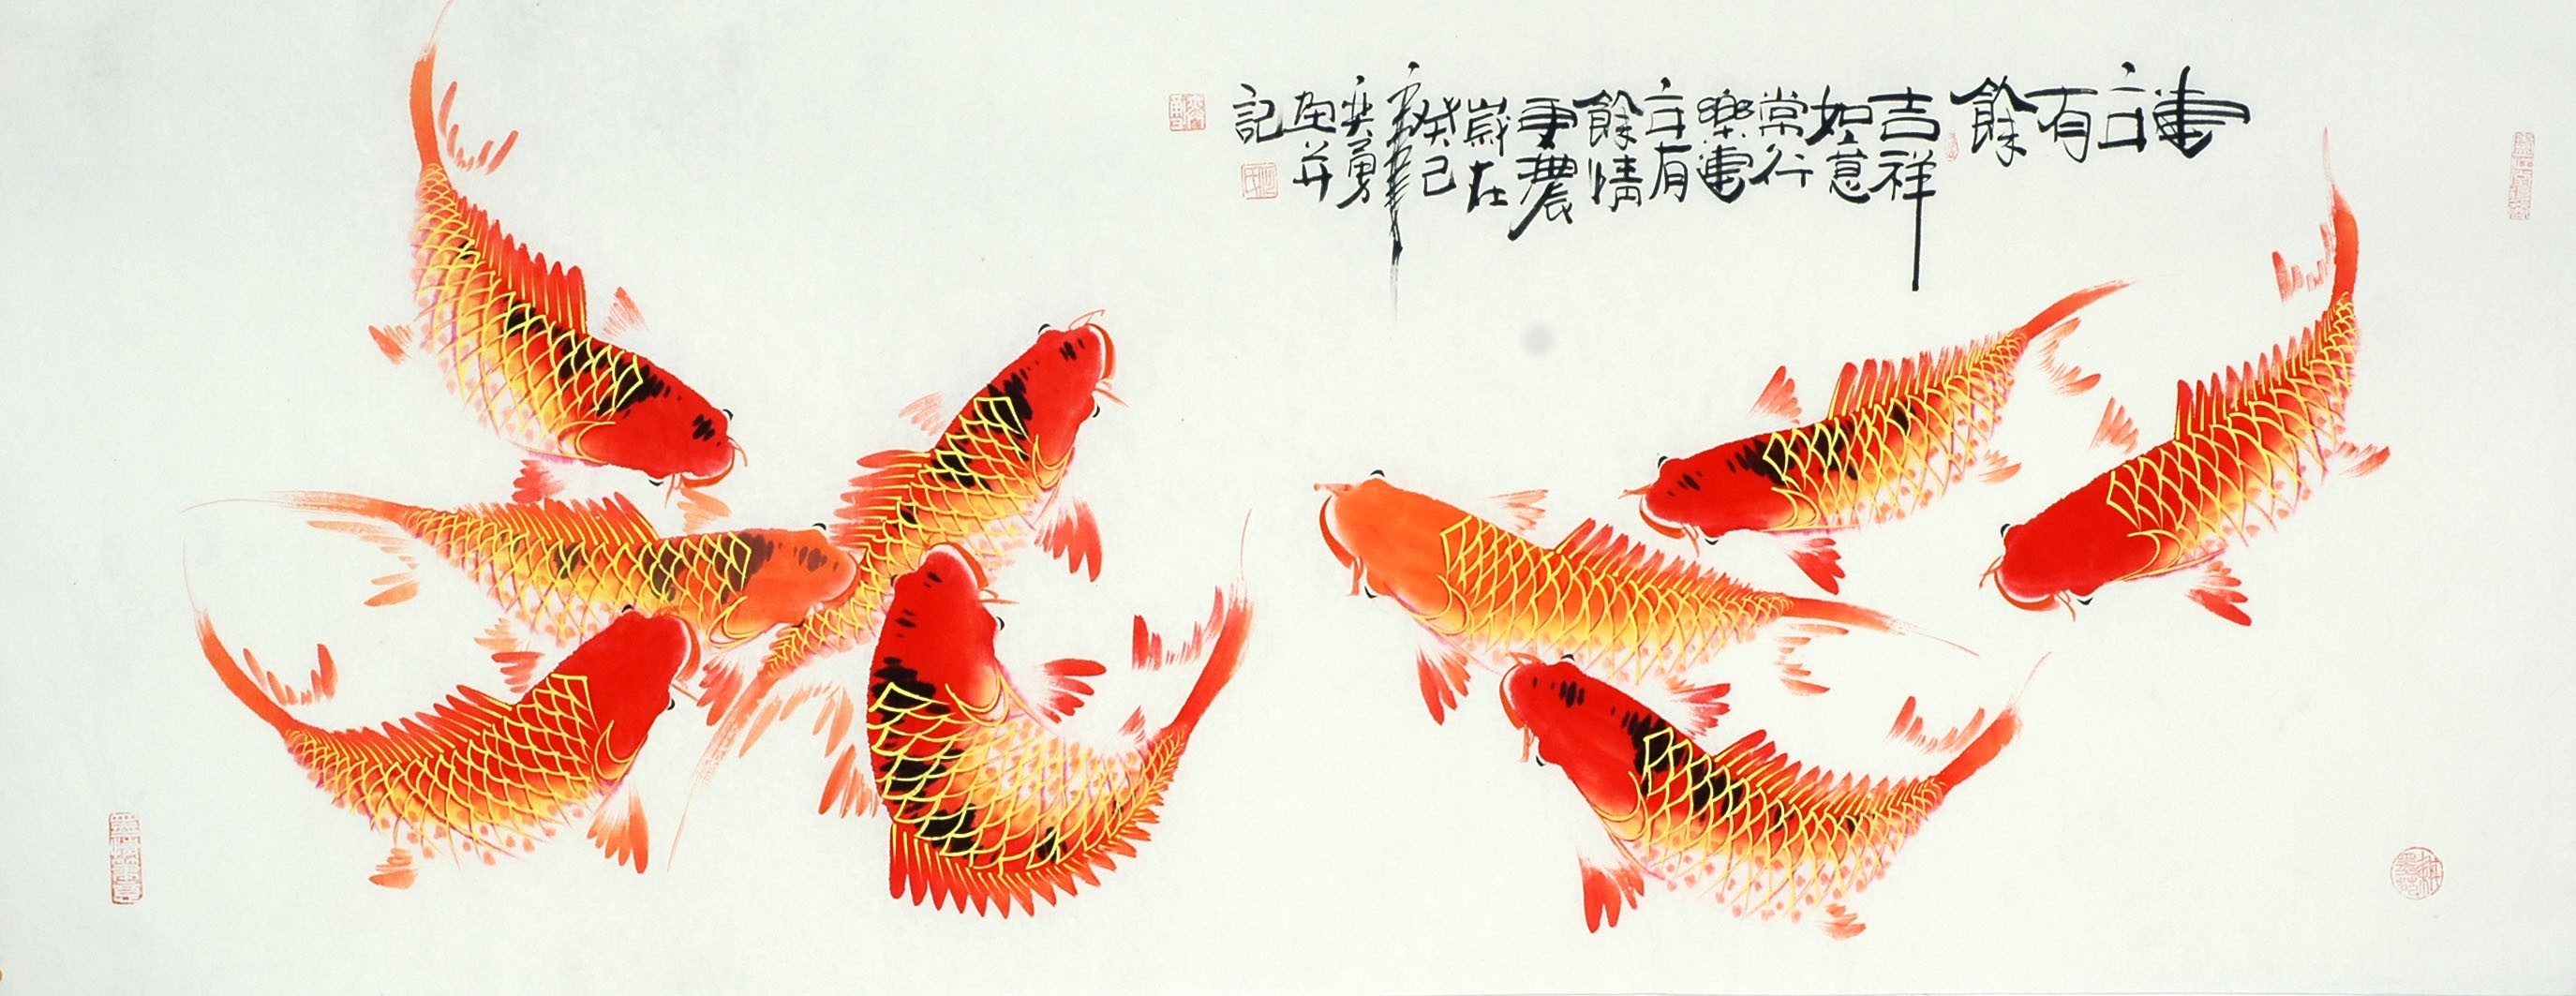 Chinese Fish Painting - CNAG010112